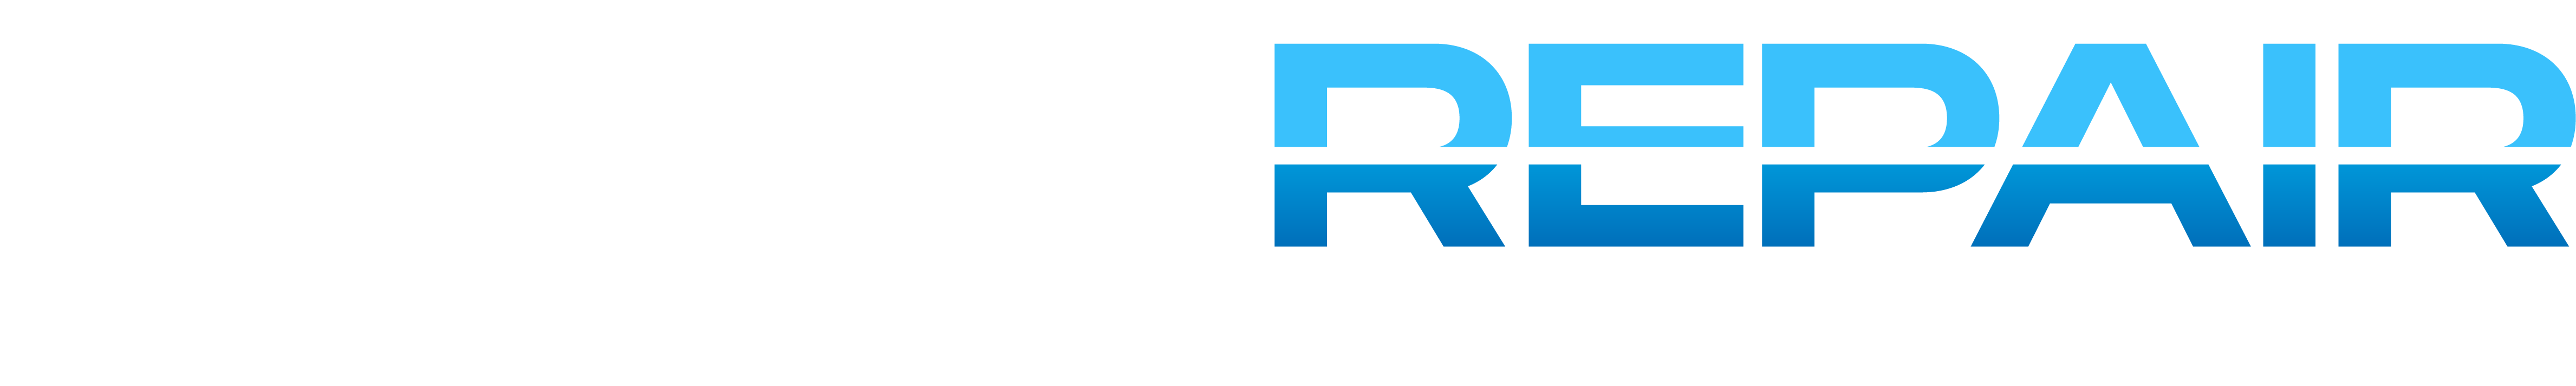 Laser Repair Logo -Full Color